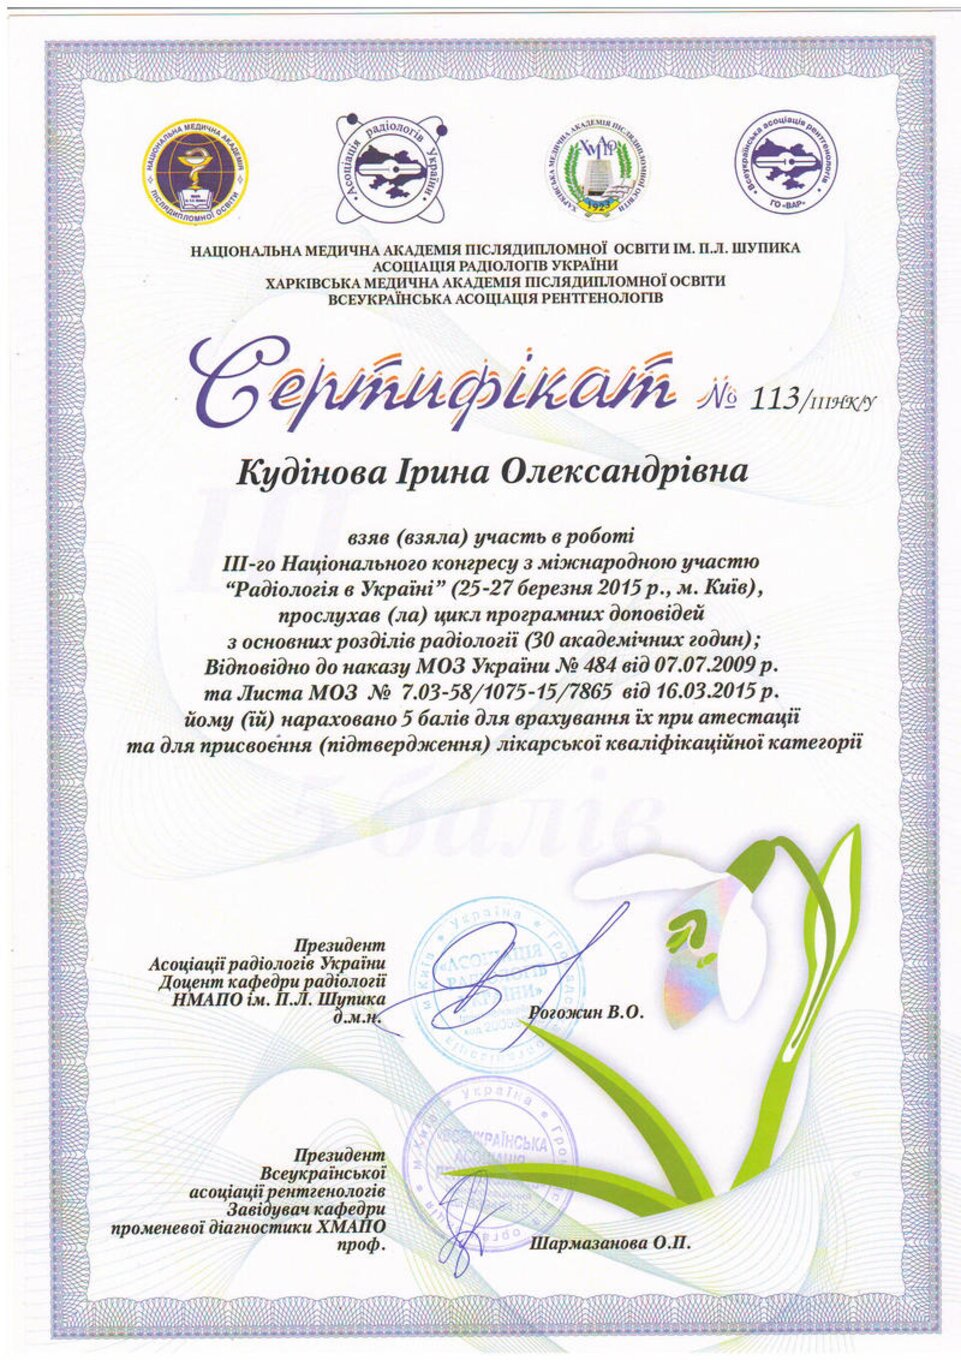 certificates/inyutochkina-irina-oleksandrivna/hemomedika-cert-inutochkina-13.jpg